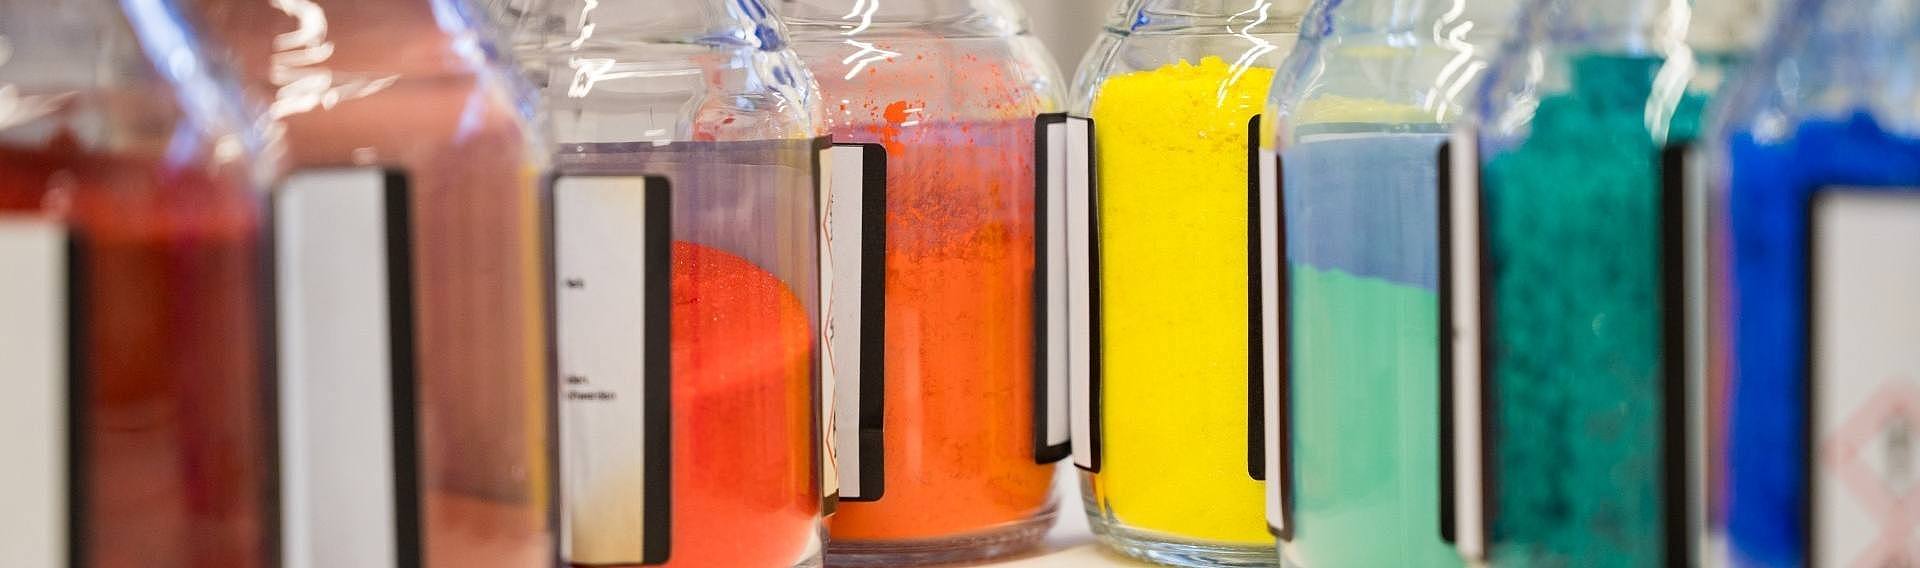 mehrere kleine Flaschen im Chemielabor mit farbigem Pulver